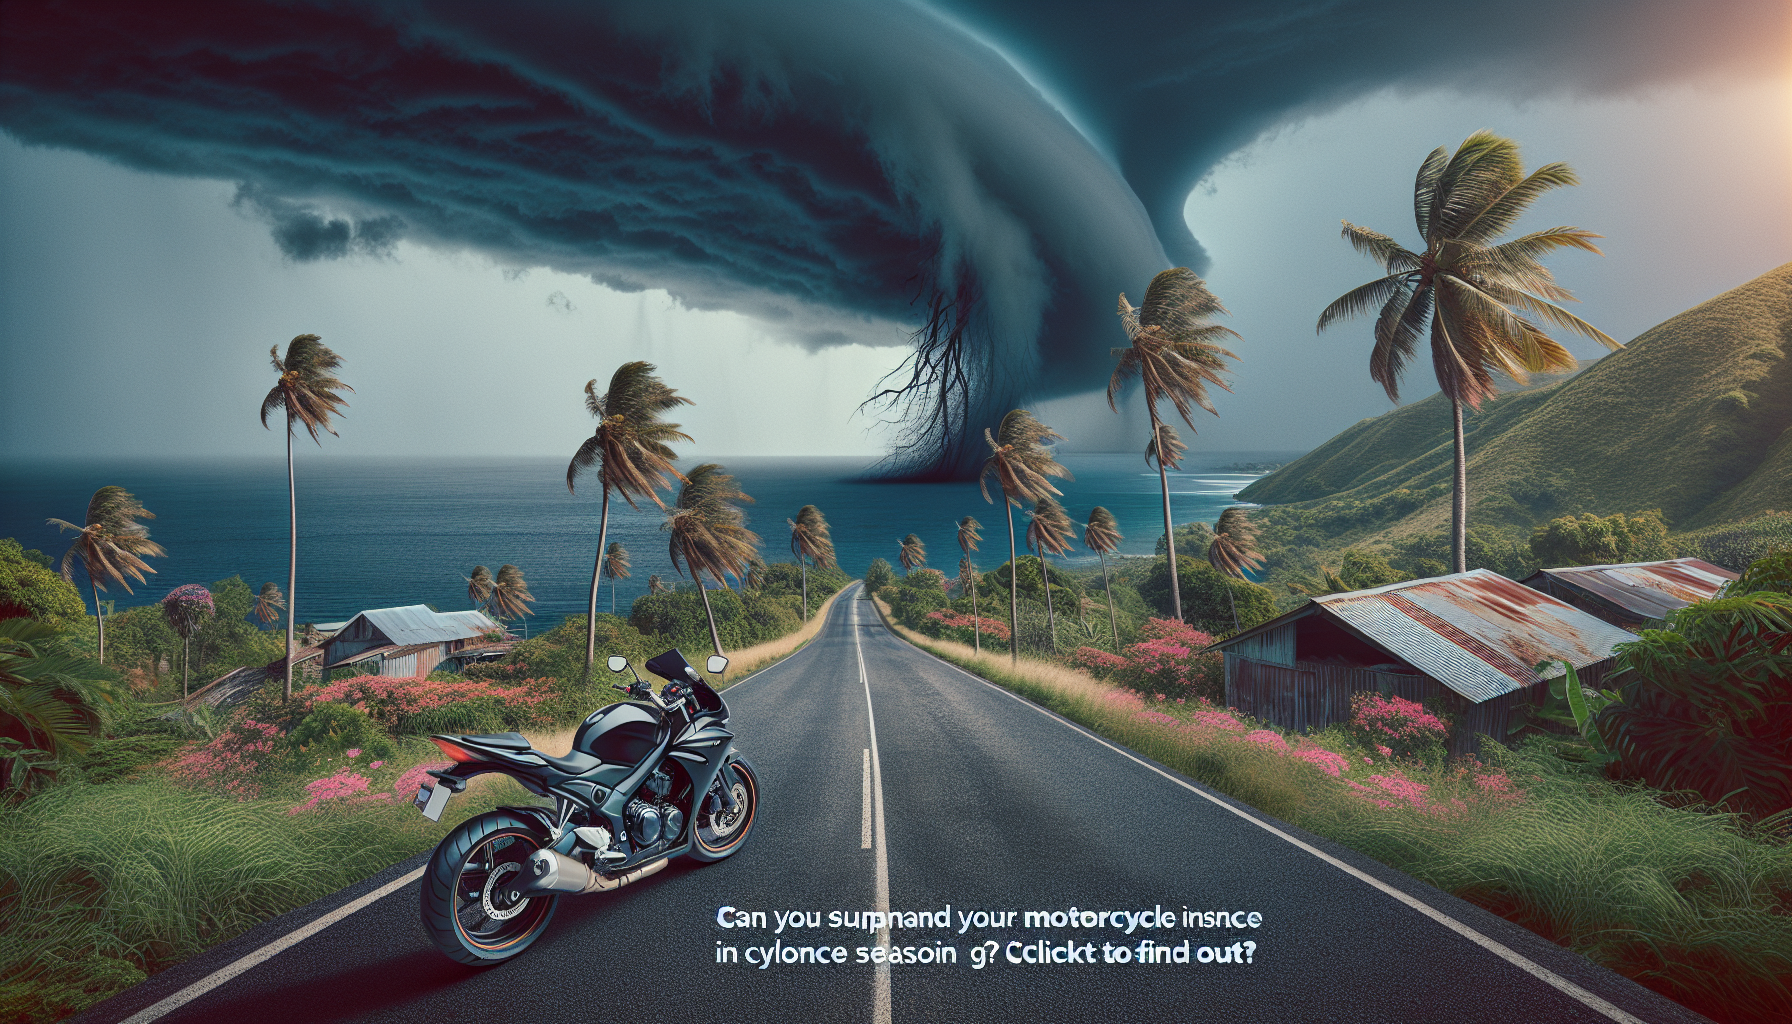 découvrez s'il est possible de suspendre votre assurance moto à la réunion pendant la saison cyclonique et obtenez les informations nécessaires sur l'assurance moto à la réunion avec notre guide complet.